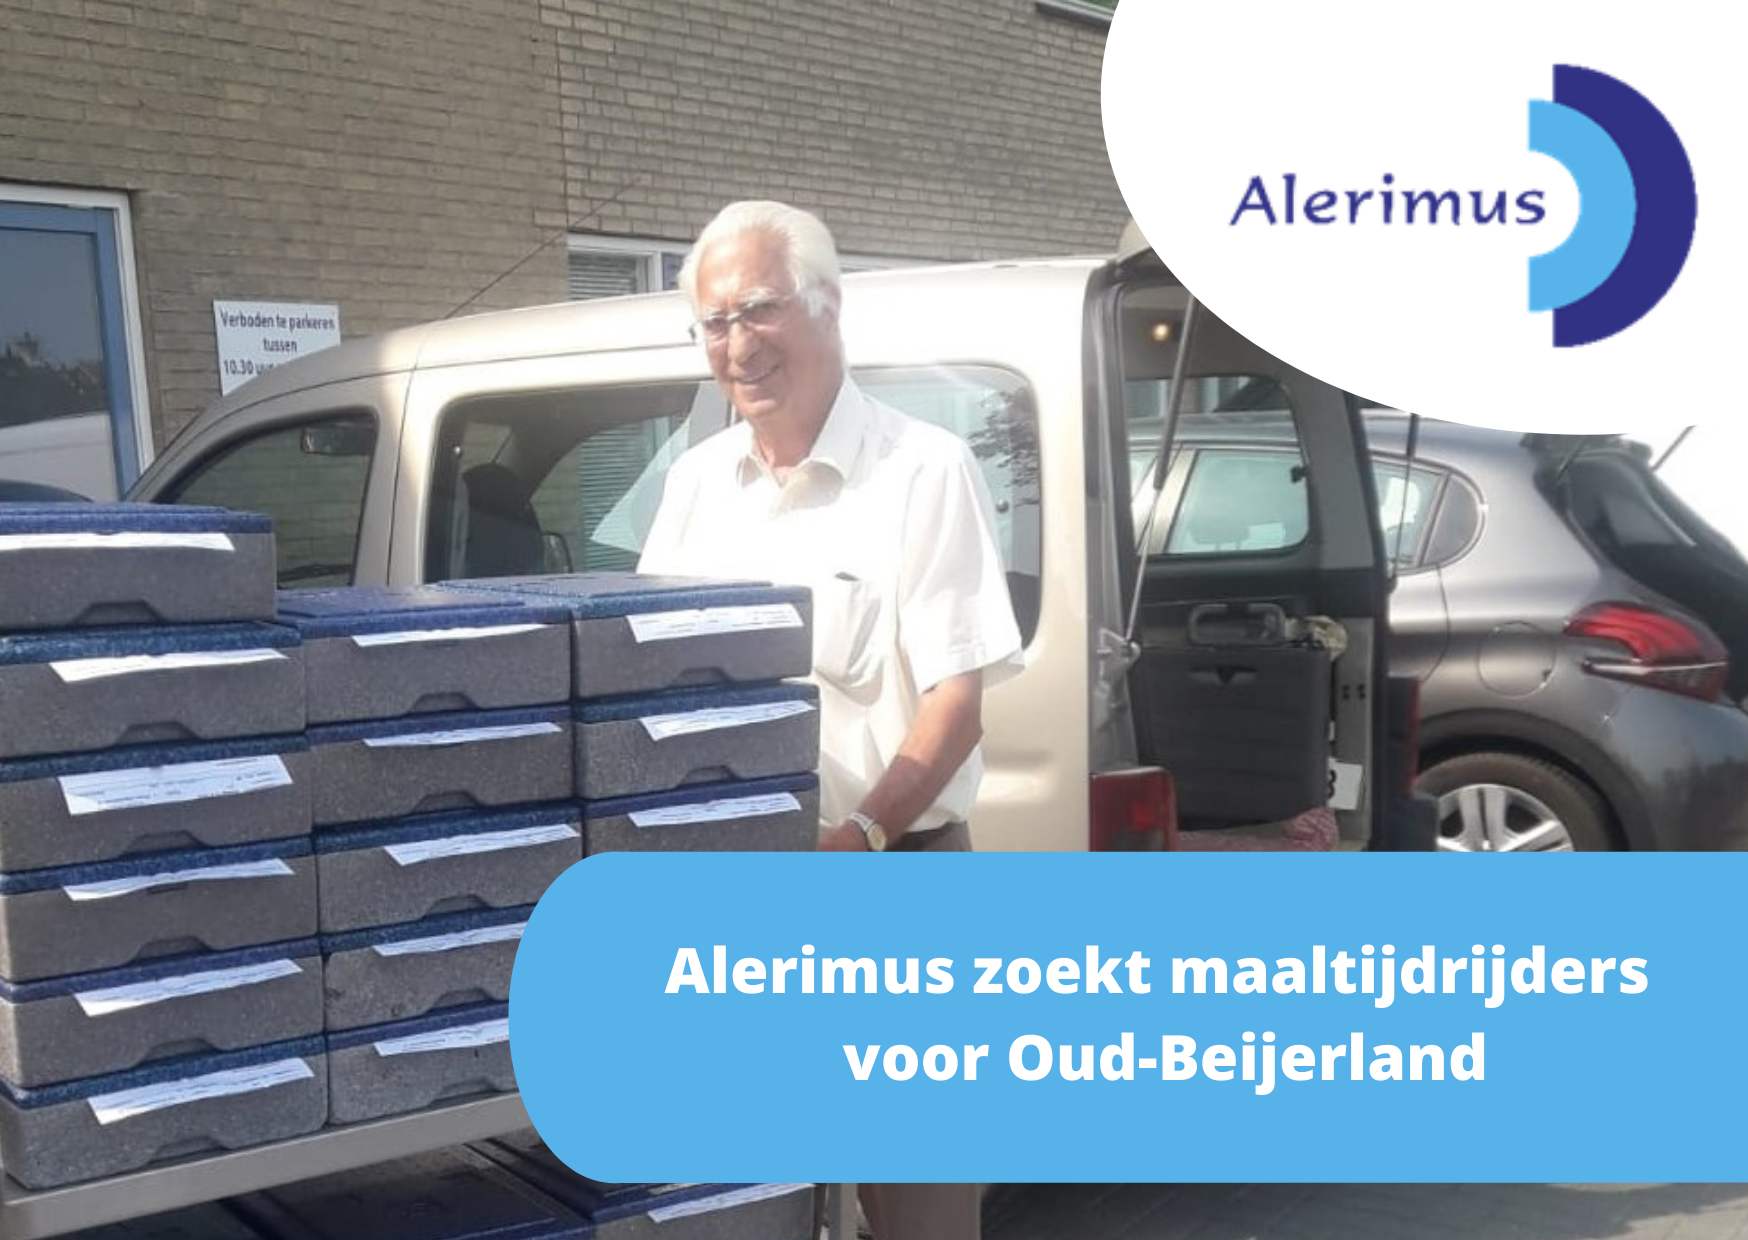 Alerimus zoekt maaltijdrijders in Oud-Beijerland